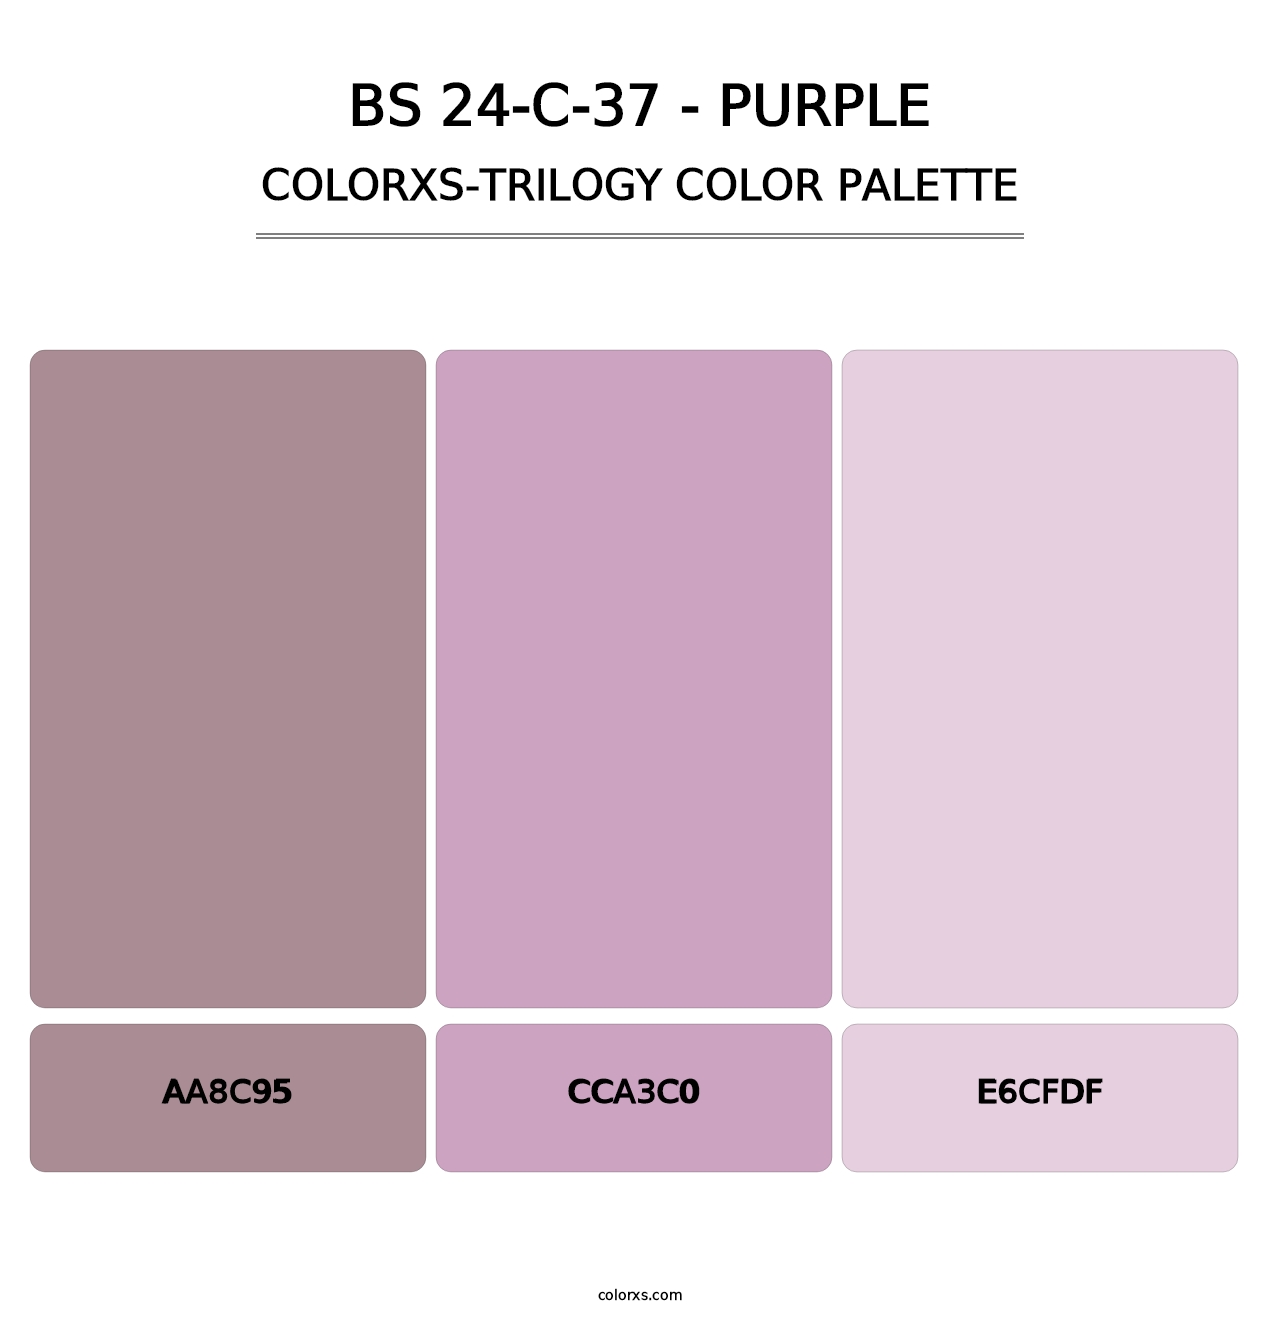 BS 24-C-37 - Purple - Colorxs Trilogy Palette